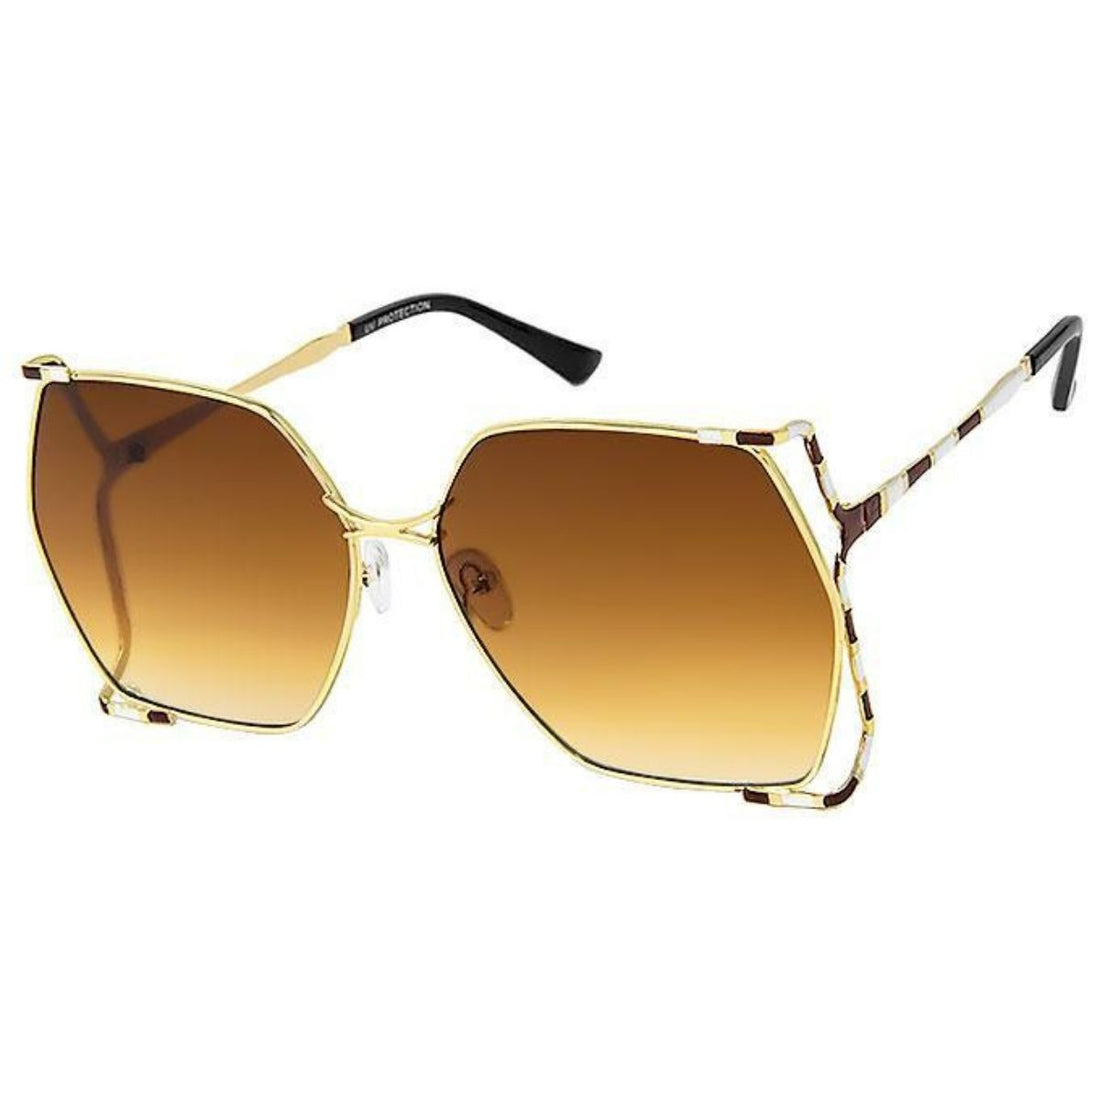 Brown Square Striped Arm Sunglasses